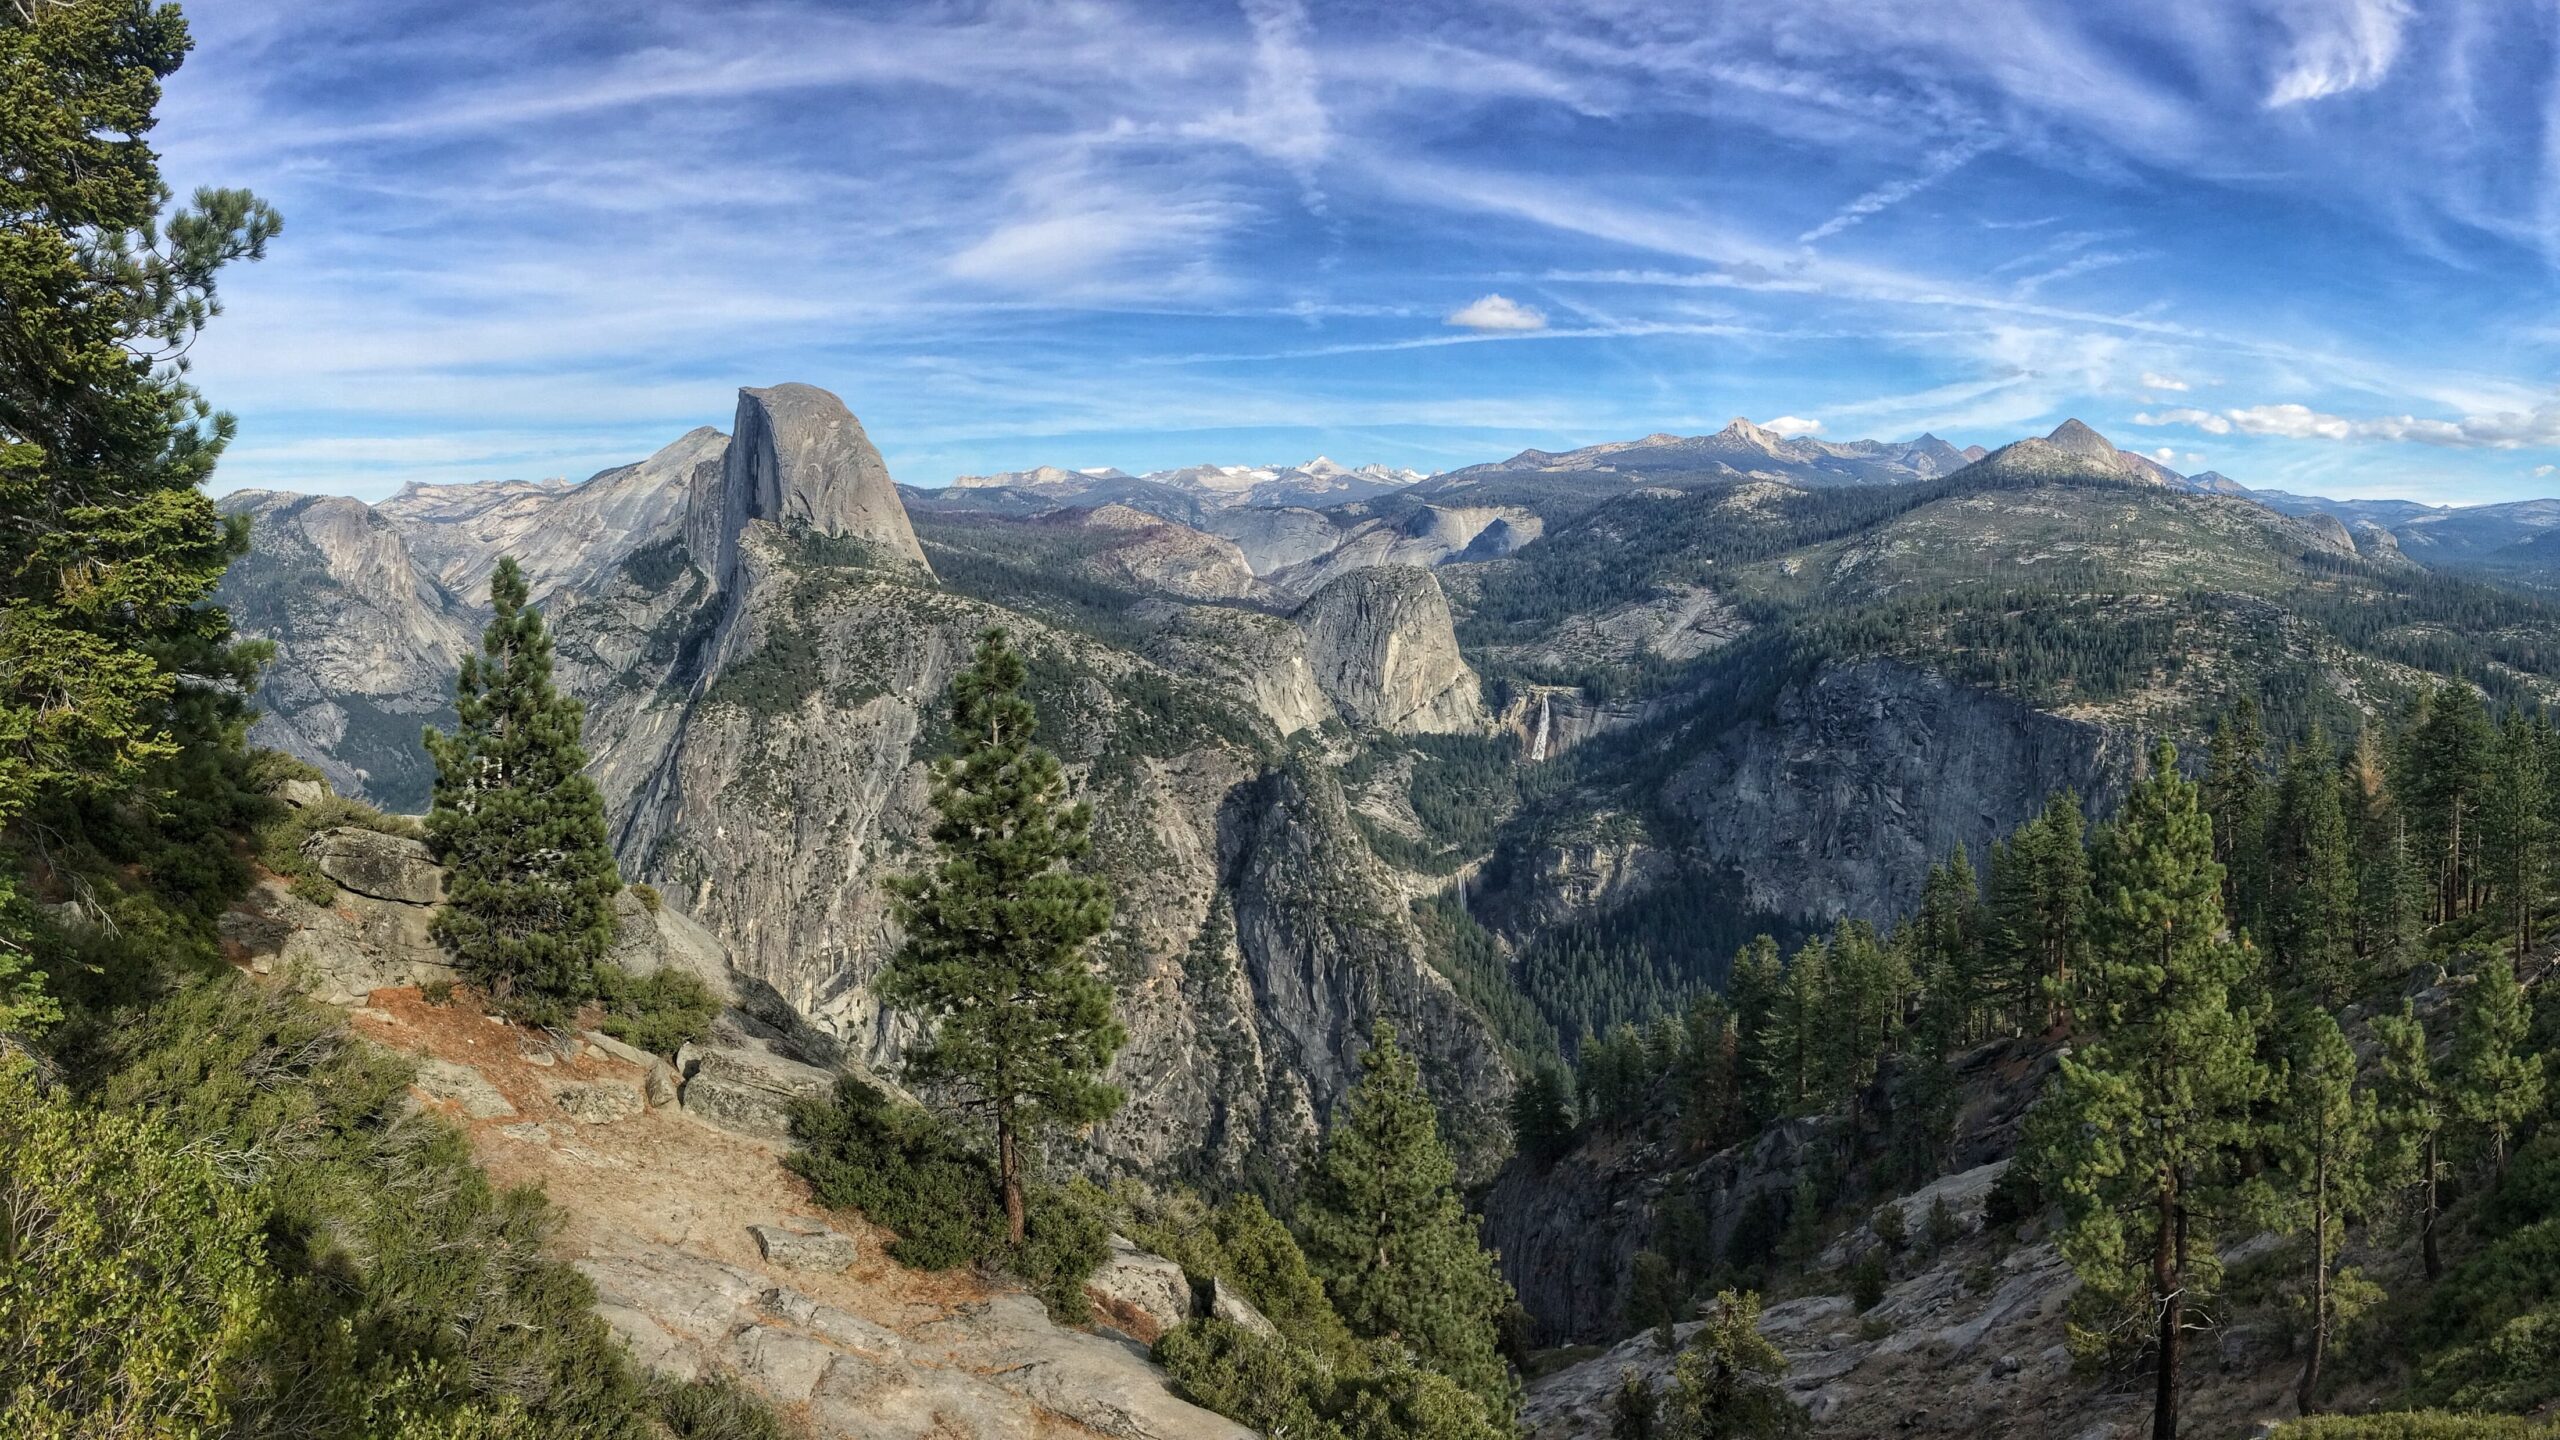 Yosemite National Park, United States